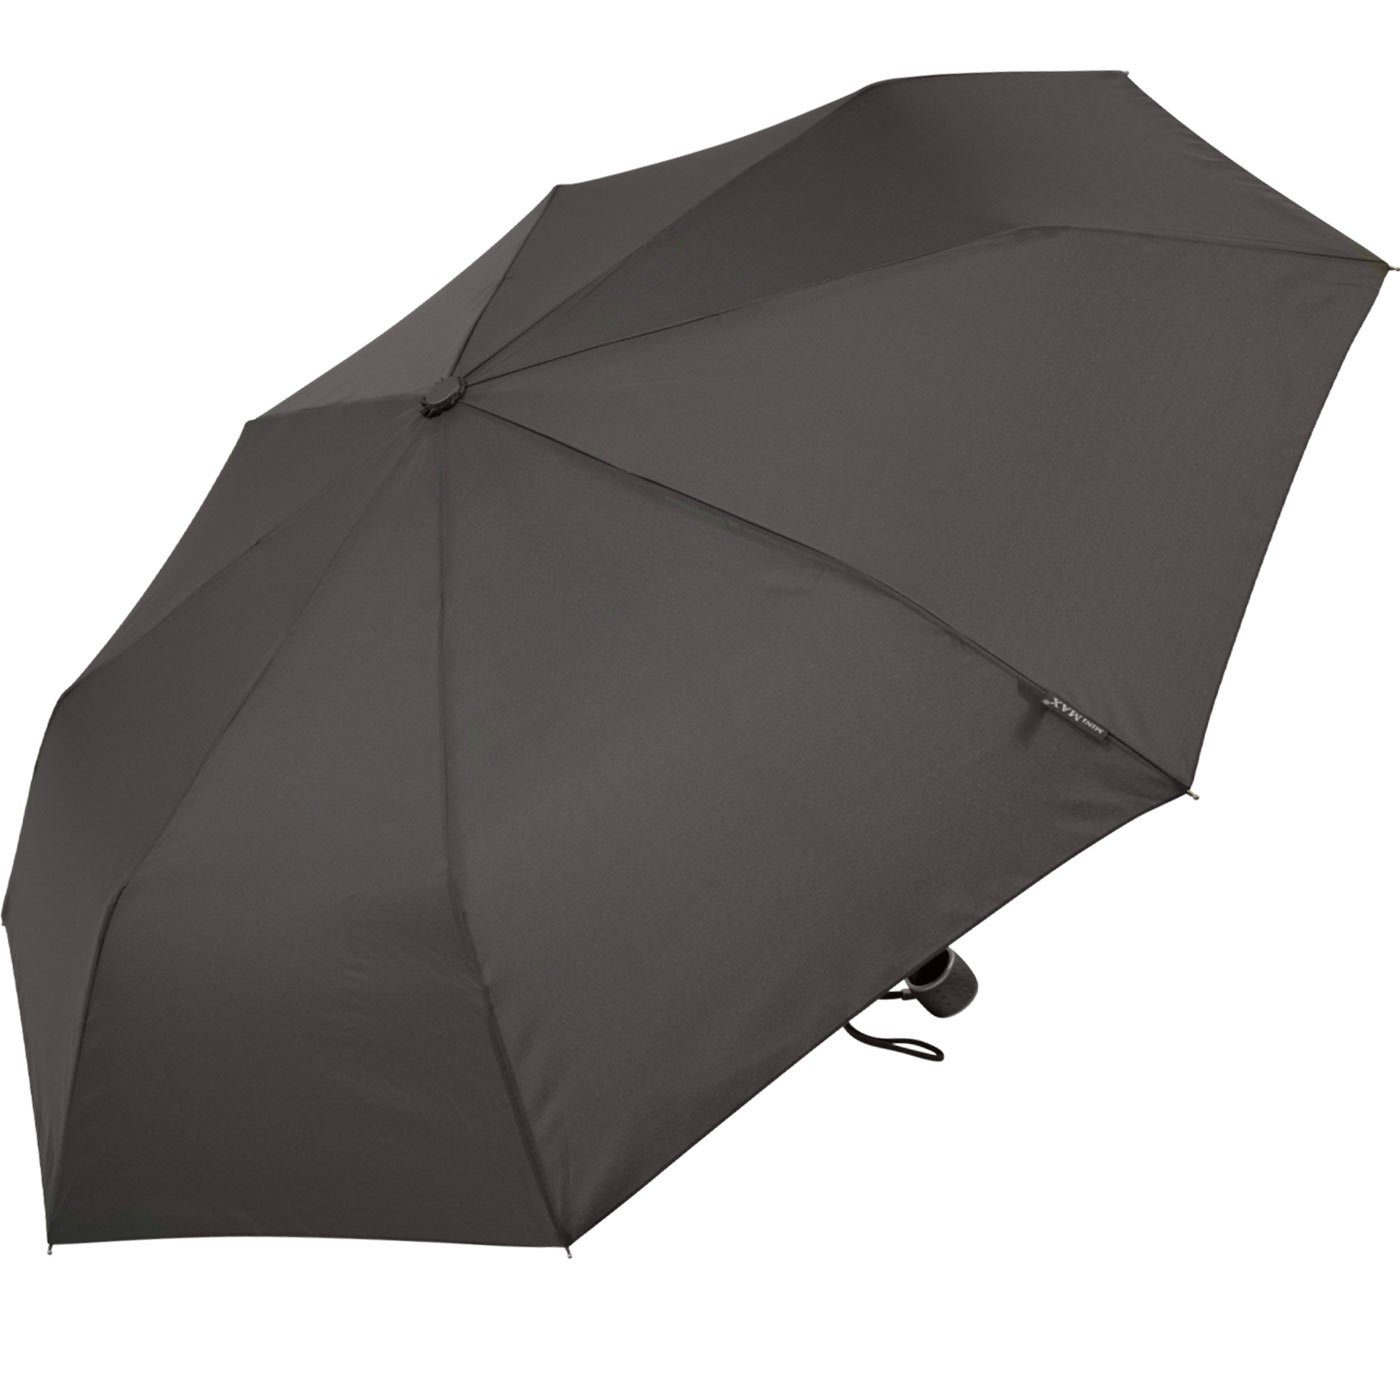 Tasche grau in Taschenregenschirm Impliva passt Handöffner, miniMAX® kleiner Schirm jjede leichter